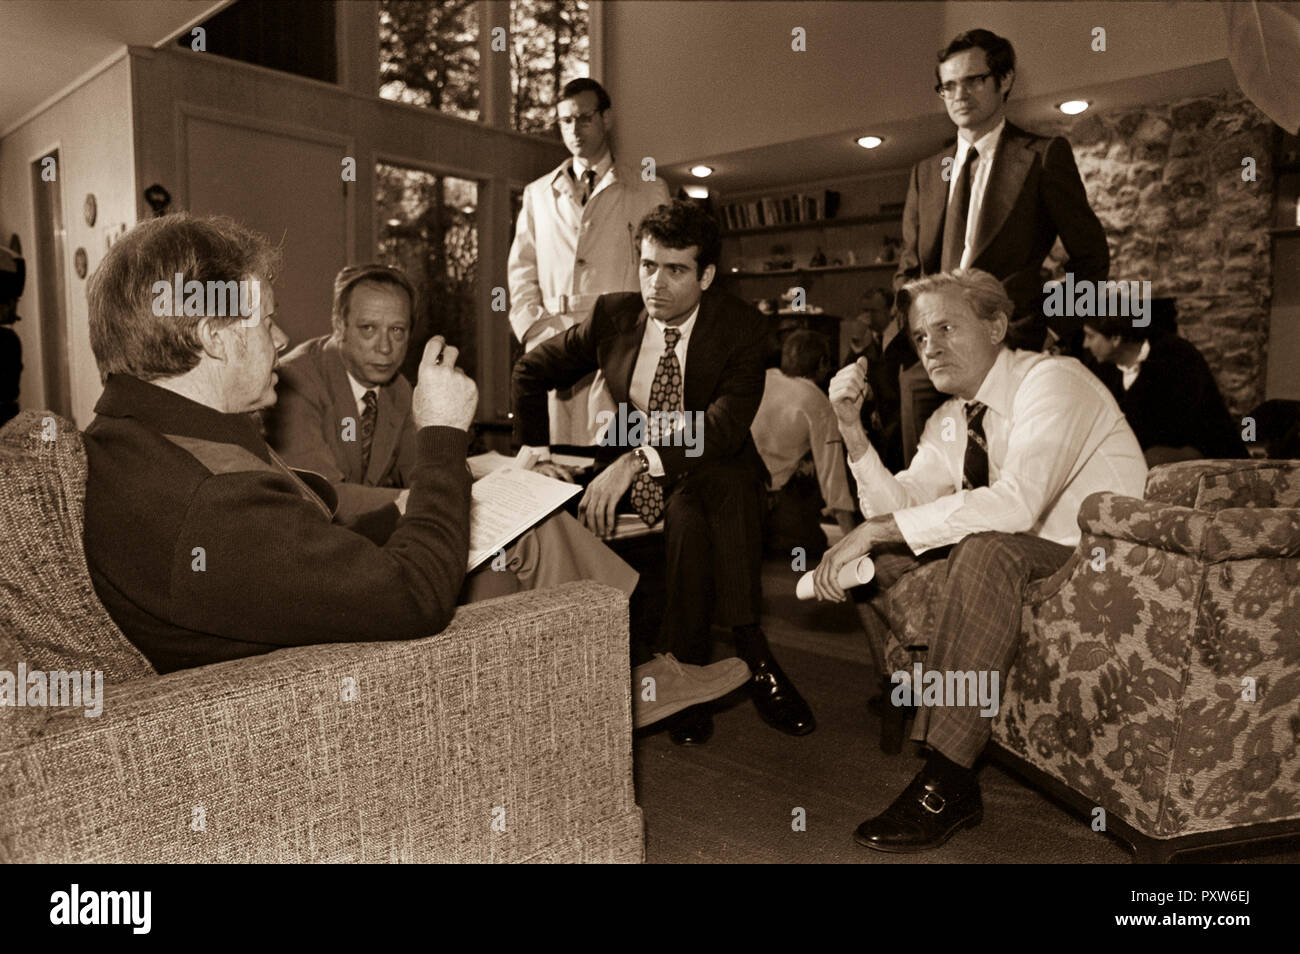 Le président Jimmy Carter rencontre les membres du cabinet et les conseillers dont Michael Blumenthal, Stuart Eisenstat, Jack Watson et Charles Schultz. Banque D'Images